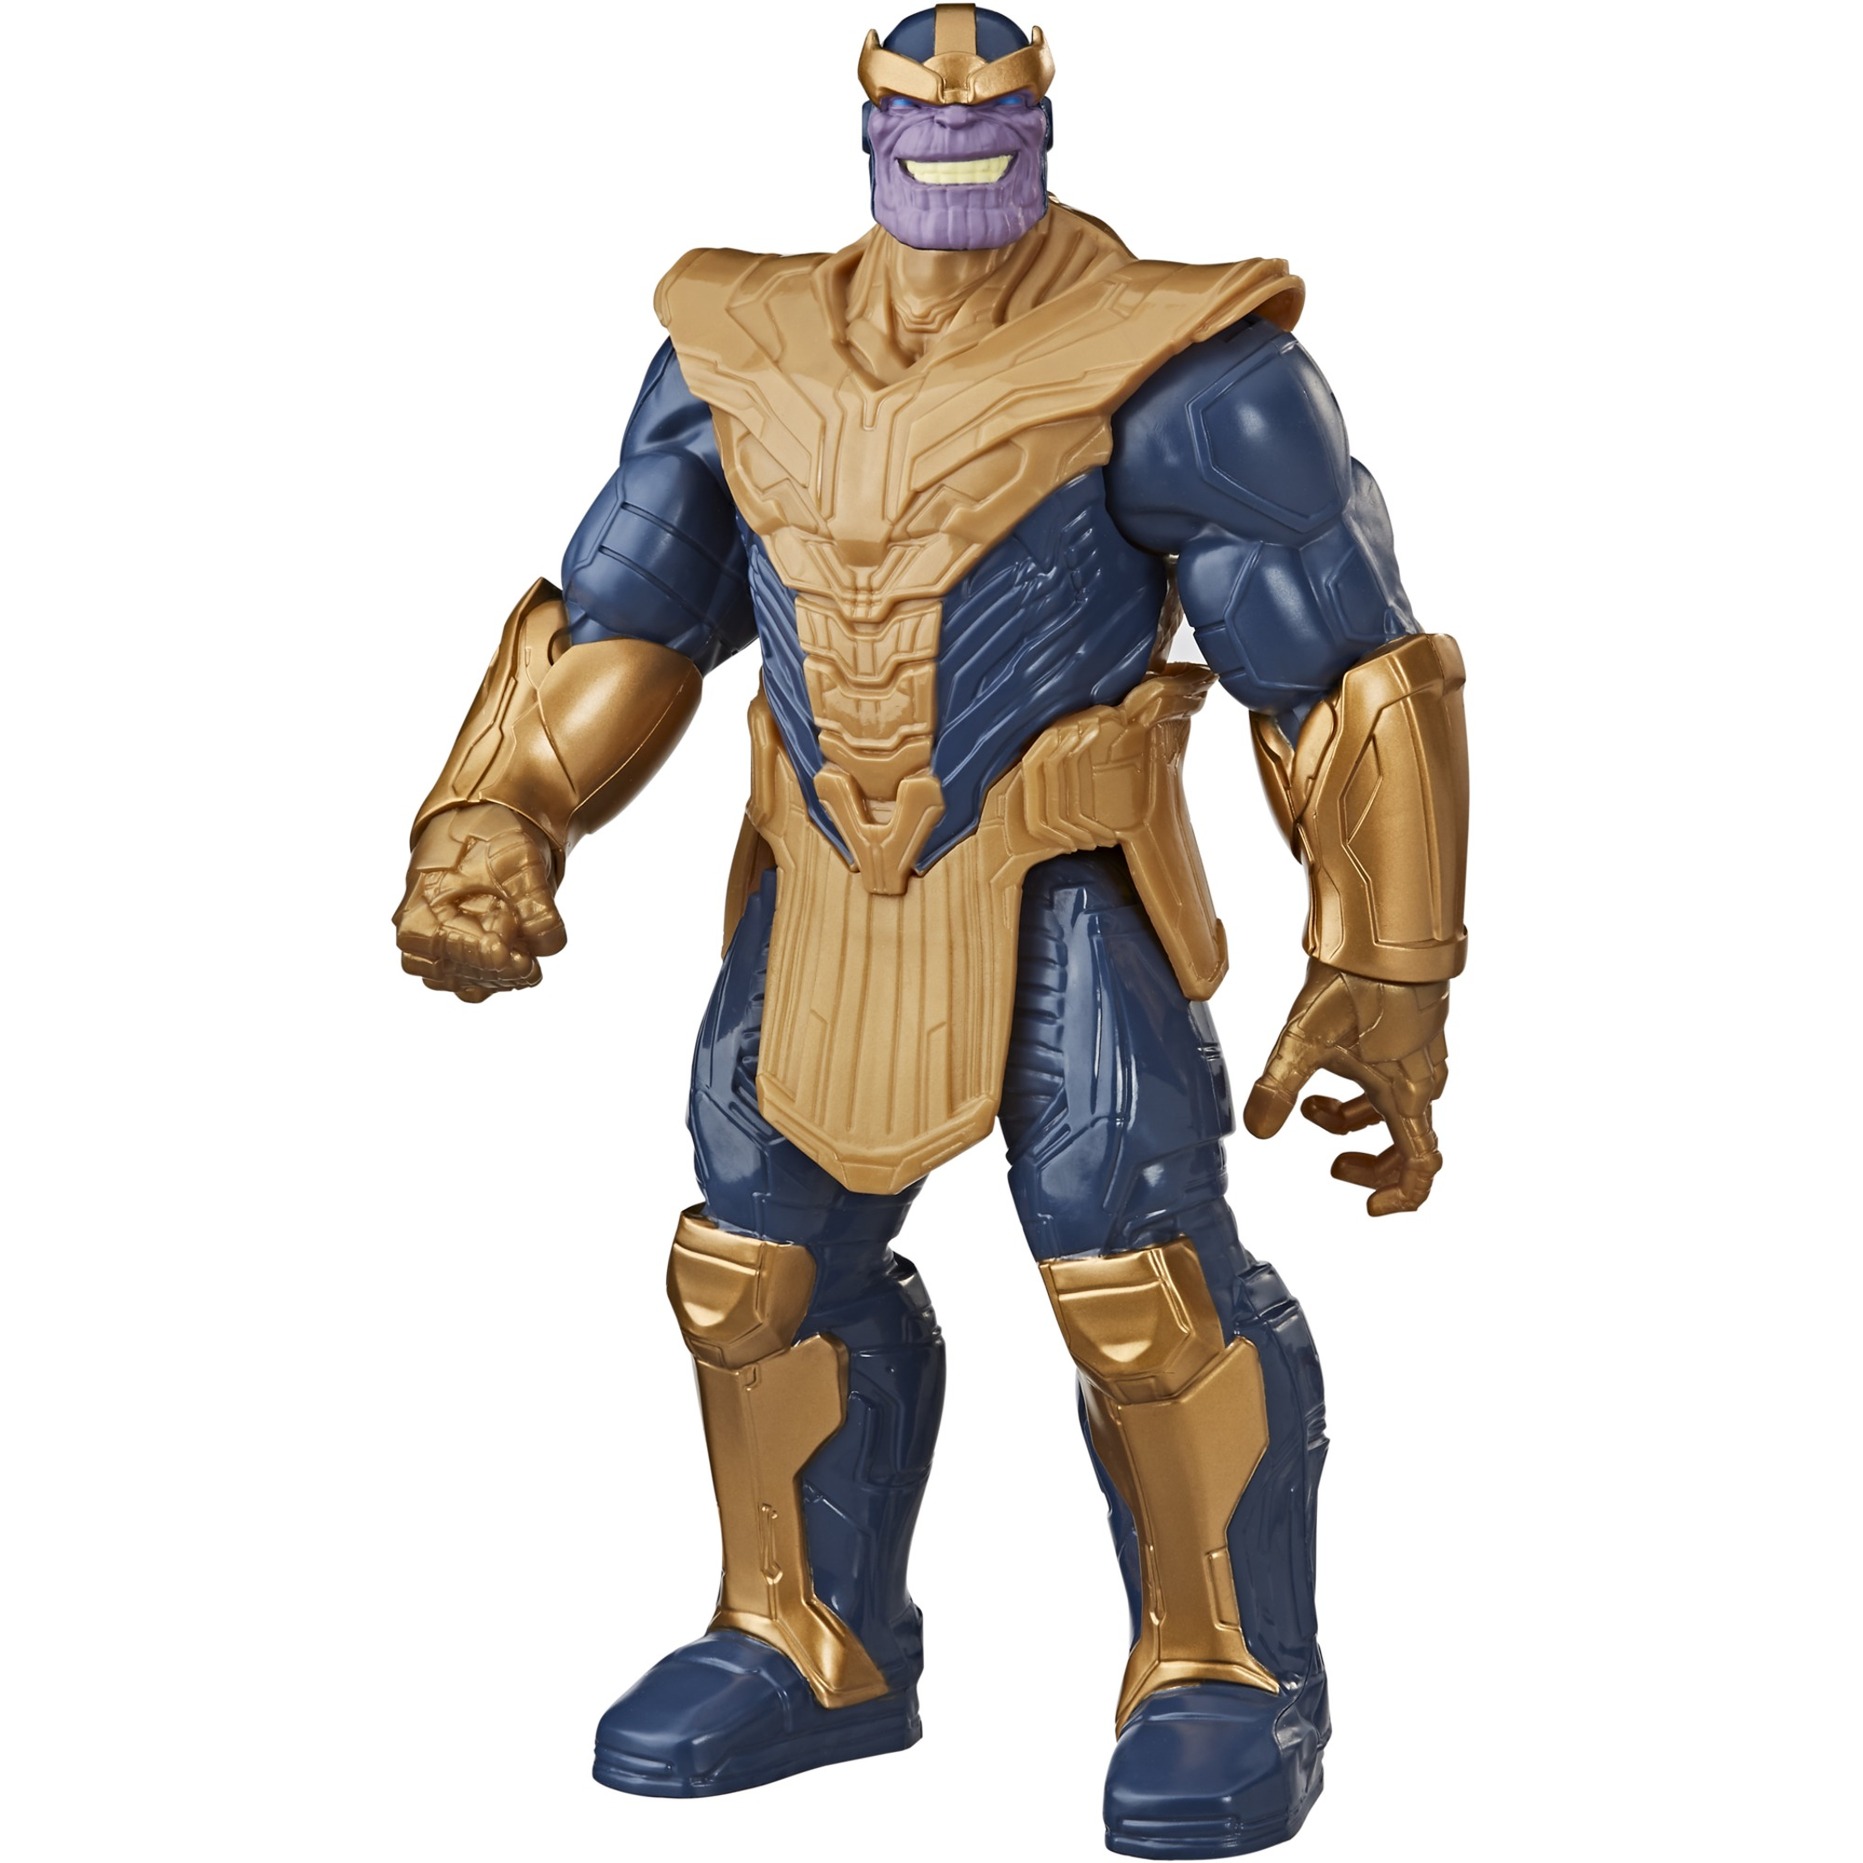 Hasbro Marvel Avengers Titan Hero Serie Blast Gear Deluxe Thanos Action-Figur, 30 cm großes Spielzeug, inspiriert durch die Marvel Comics, Für Kinder ab 4 Jahren